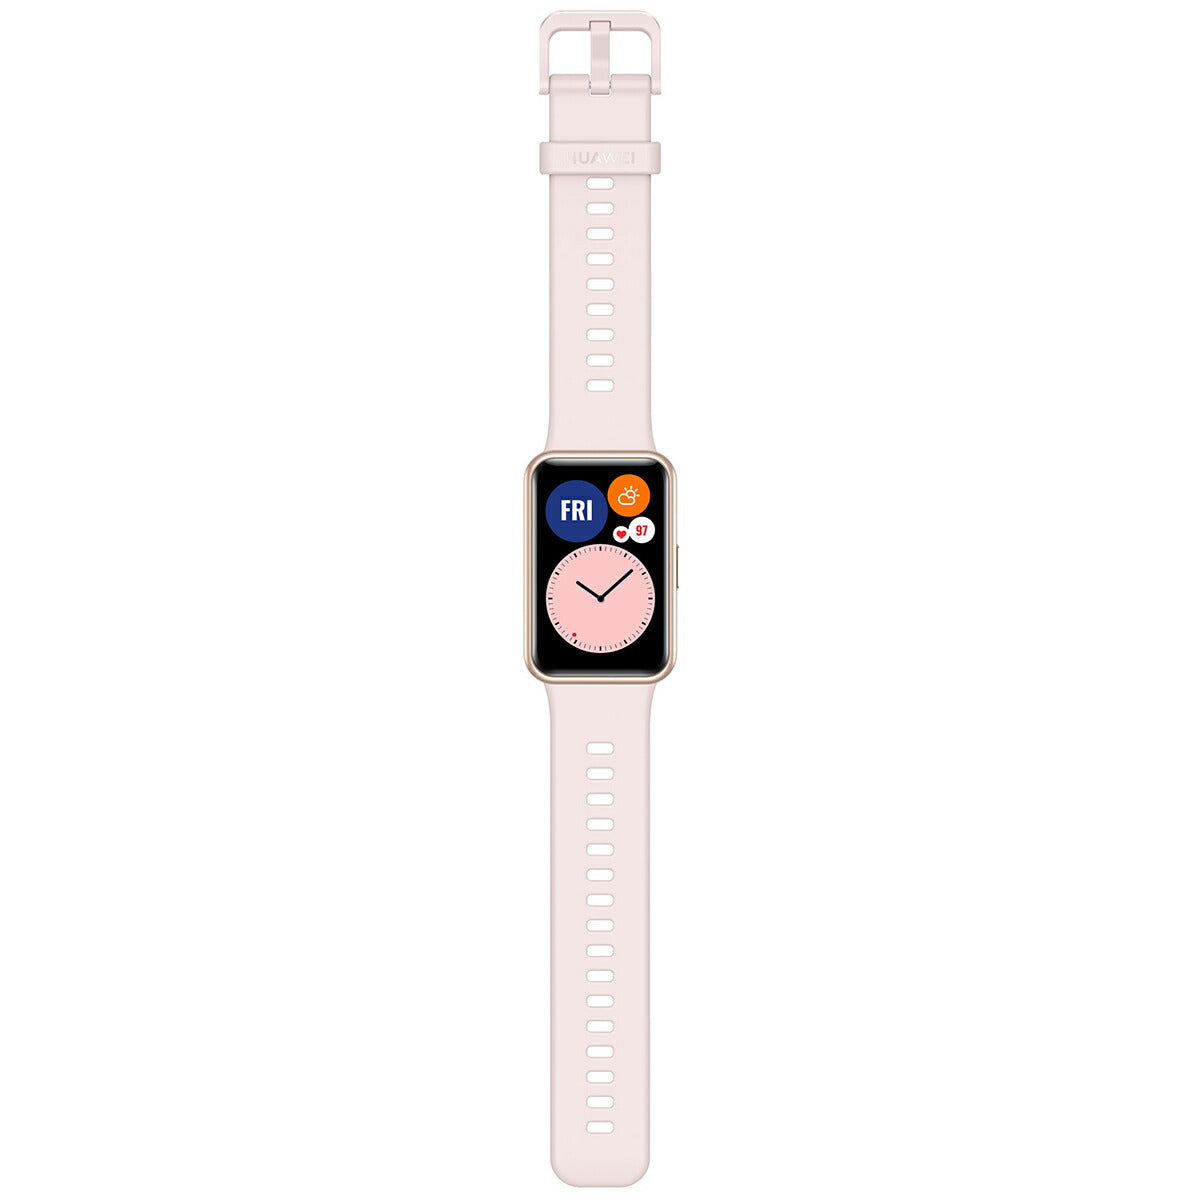 ファーウェイ HUAWEI スマートウォッチ WATCH FIT Sakura Pink サクラピンク GPS 腕時計 メンズ レディース ウェアラブル 血中酸素 HV8W000130